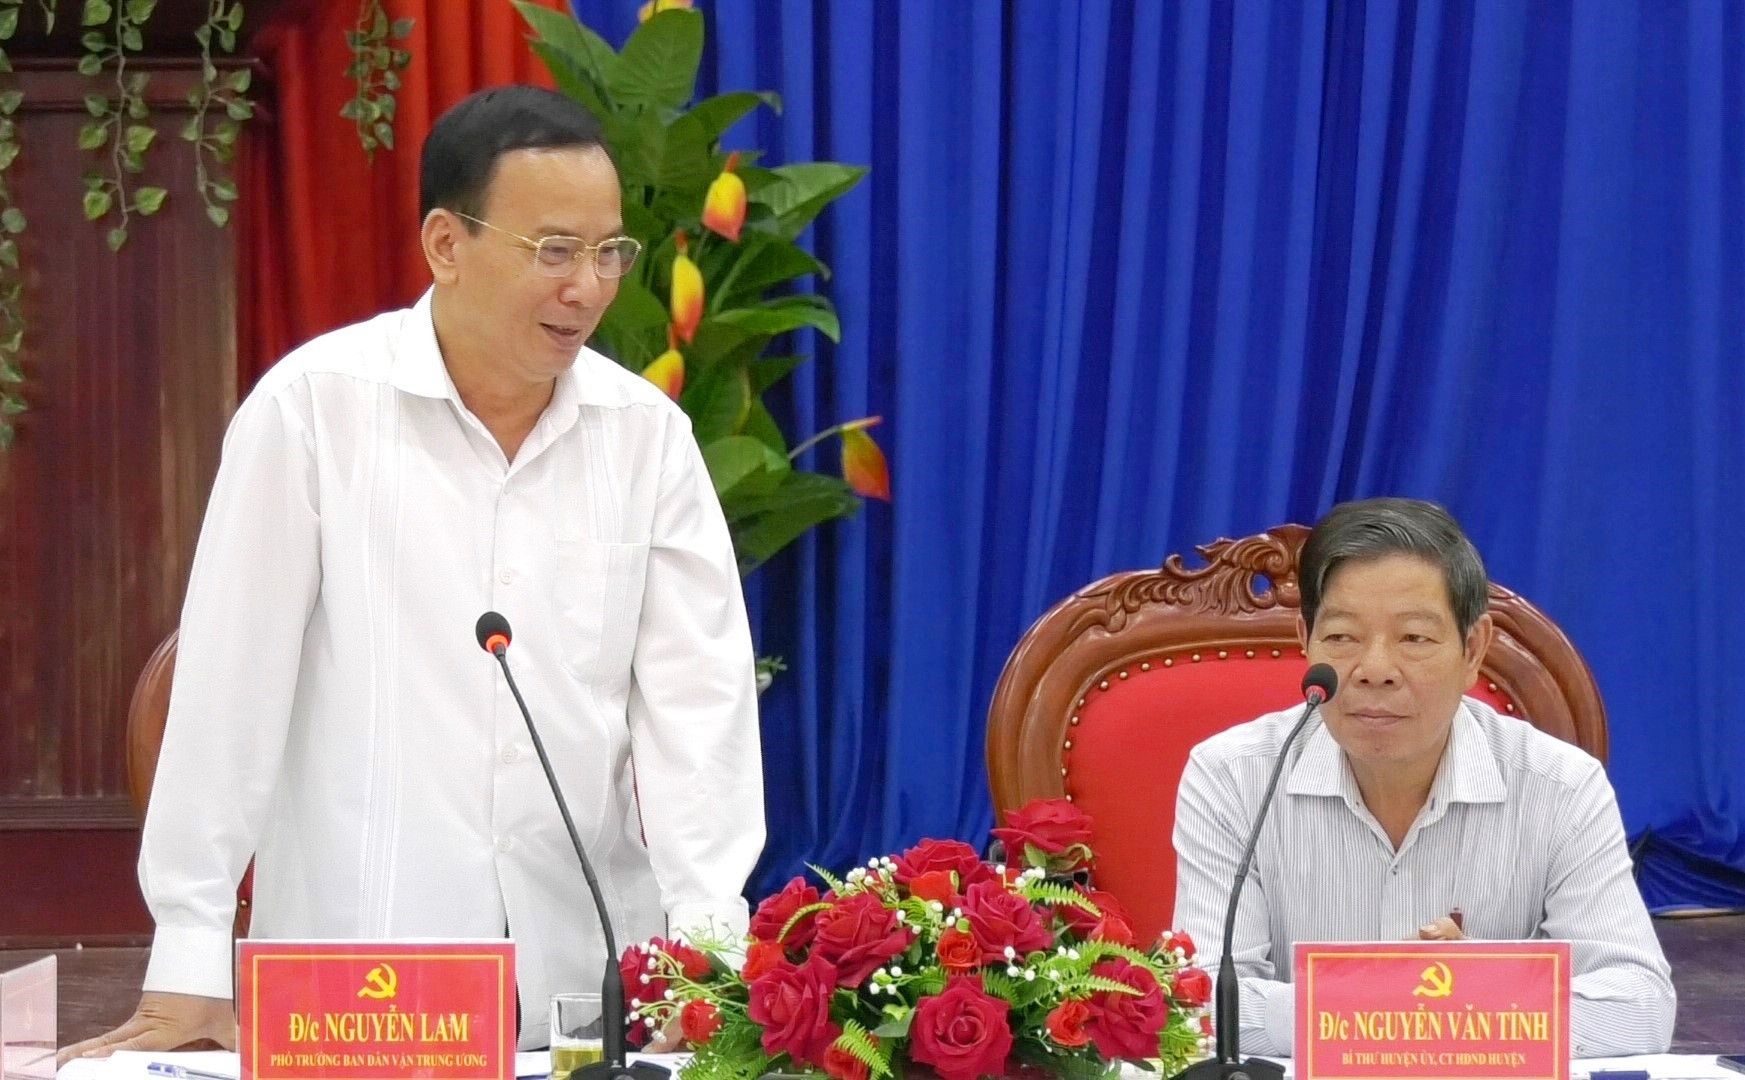 Phó Trưởng ban Dân vận Trung ương Nguyễn Lam phát biểu tại buổi làm việc. Ảnh: T.H